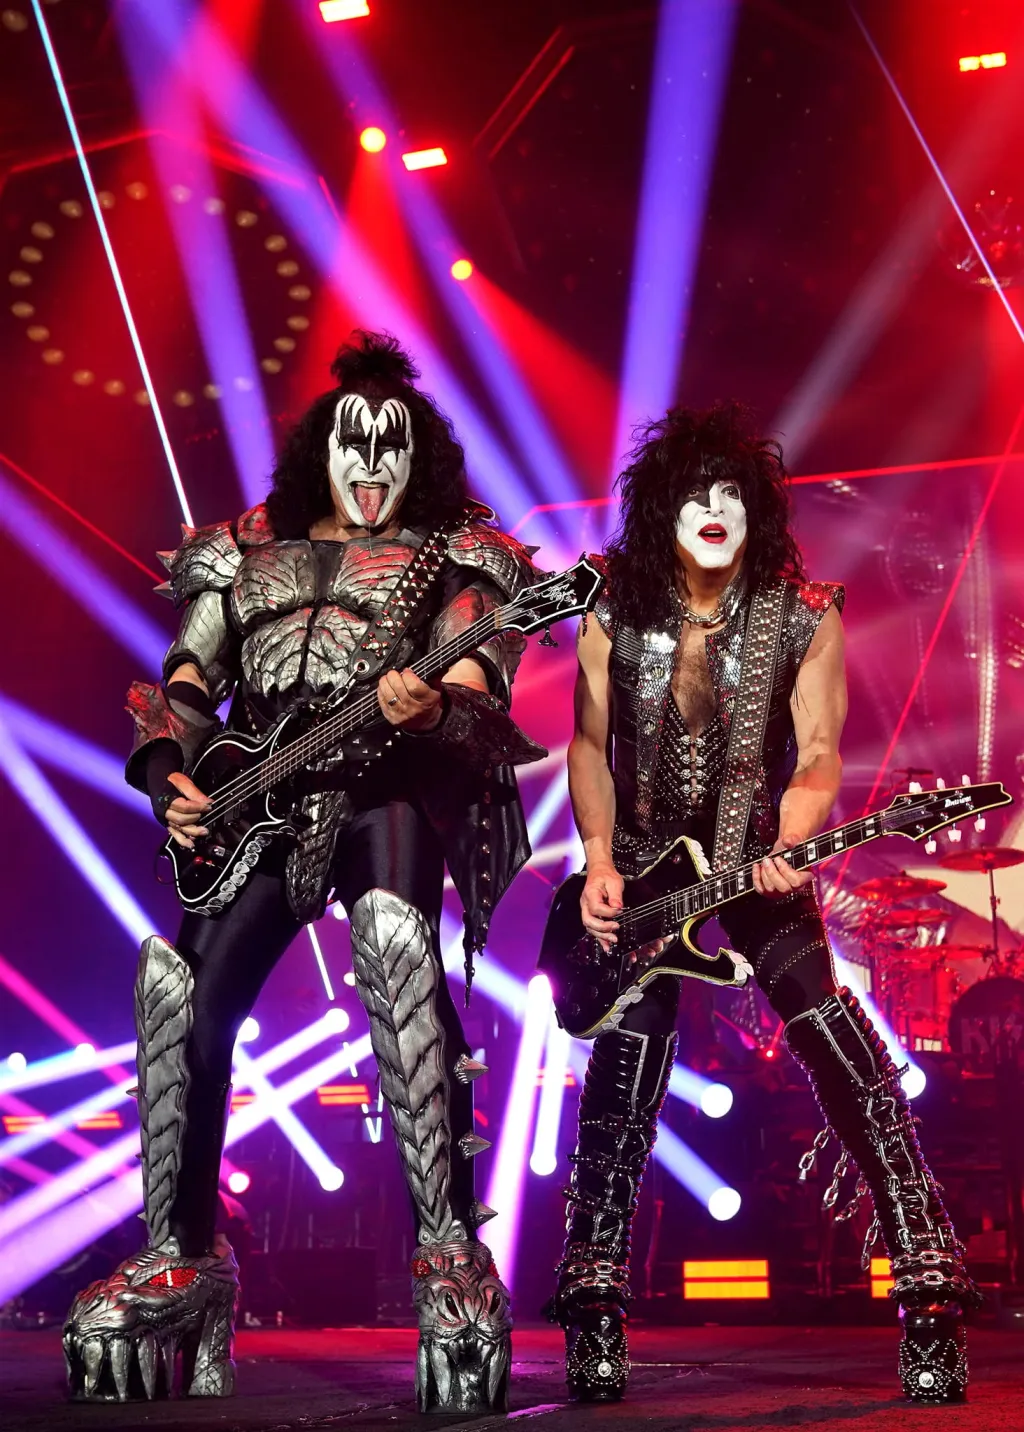 Turné The End of the Road, tedy Konec cesty, zavede do Česka kapelu Kiss na údajně už opravdu poslední koncert